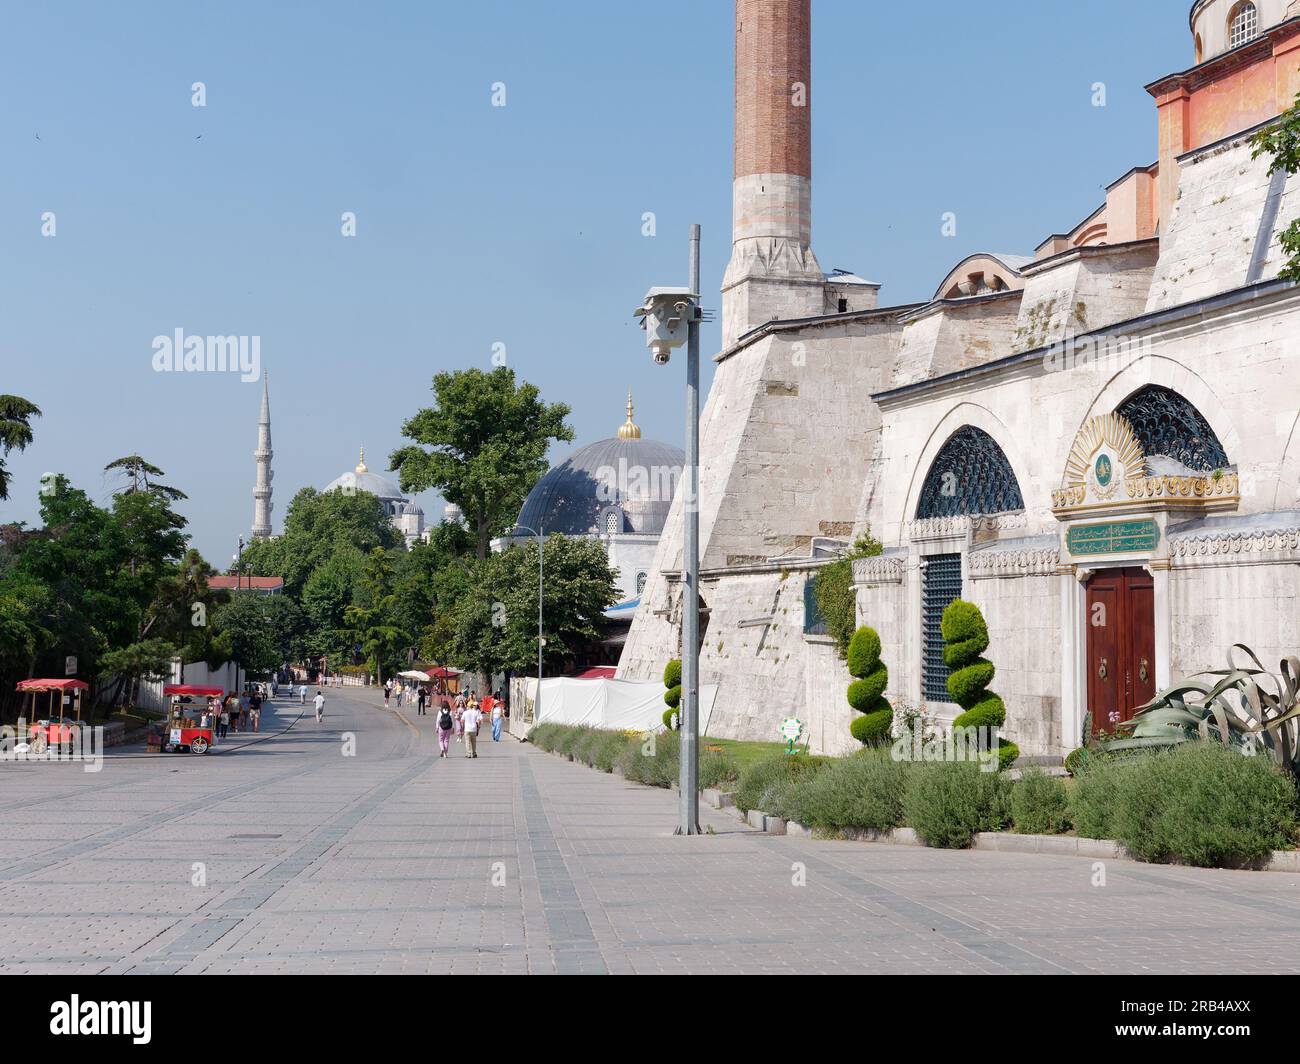 Partie de la Mosquée Sainte-Sophie droite et le Sultanahmet Sqaure, y compris des charrettes rouges vendant des Simits aka bagels turcs, Istanbul, Turquie Banque D'Images